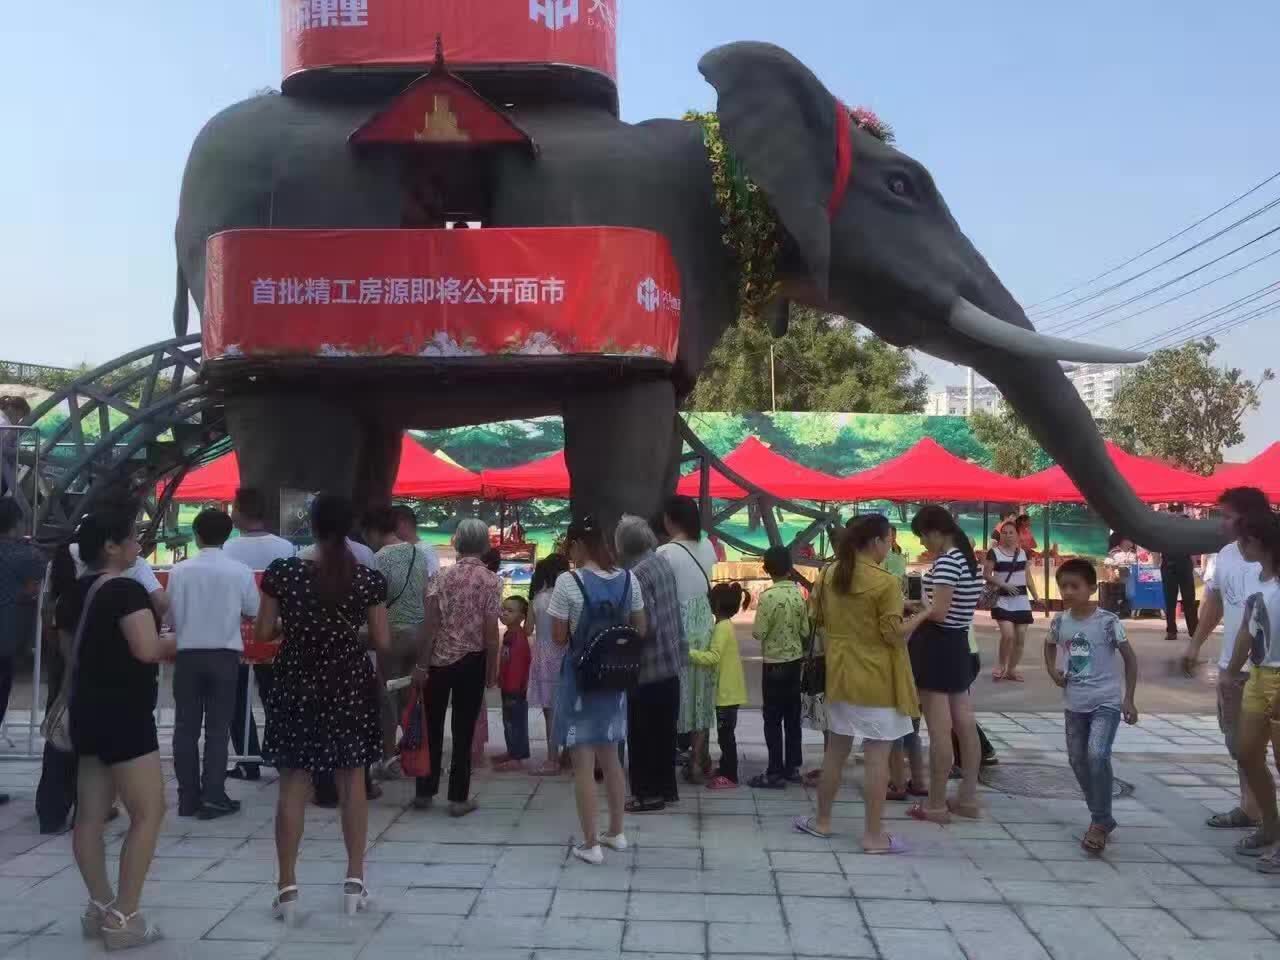 上海市暖场道具 机械大象出租出售厂家暖场道具 机械大象出租出售